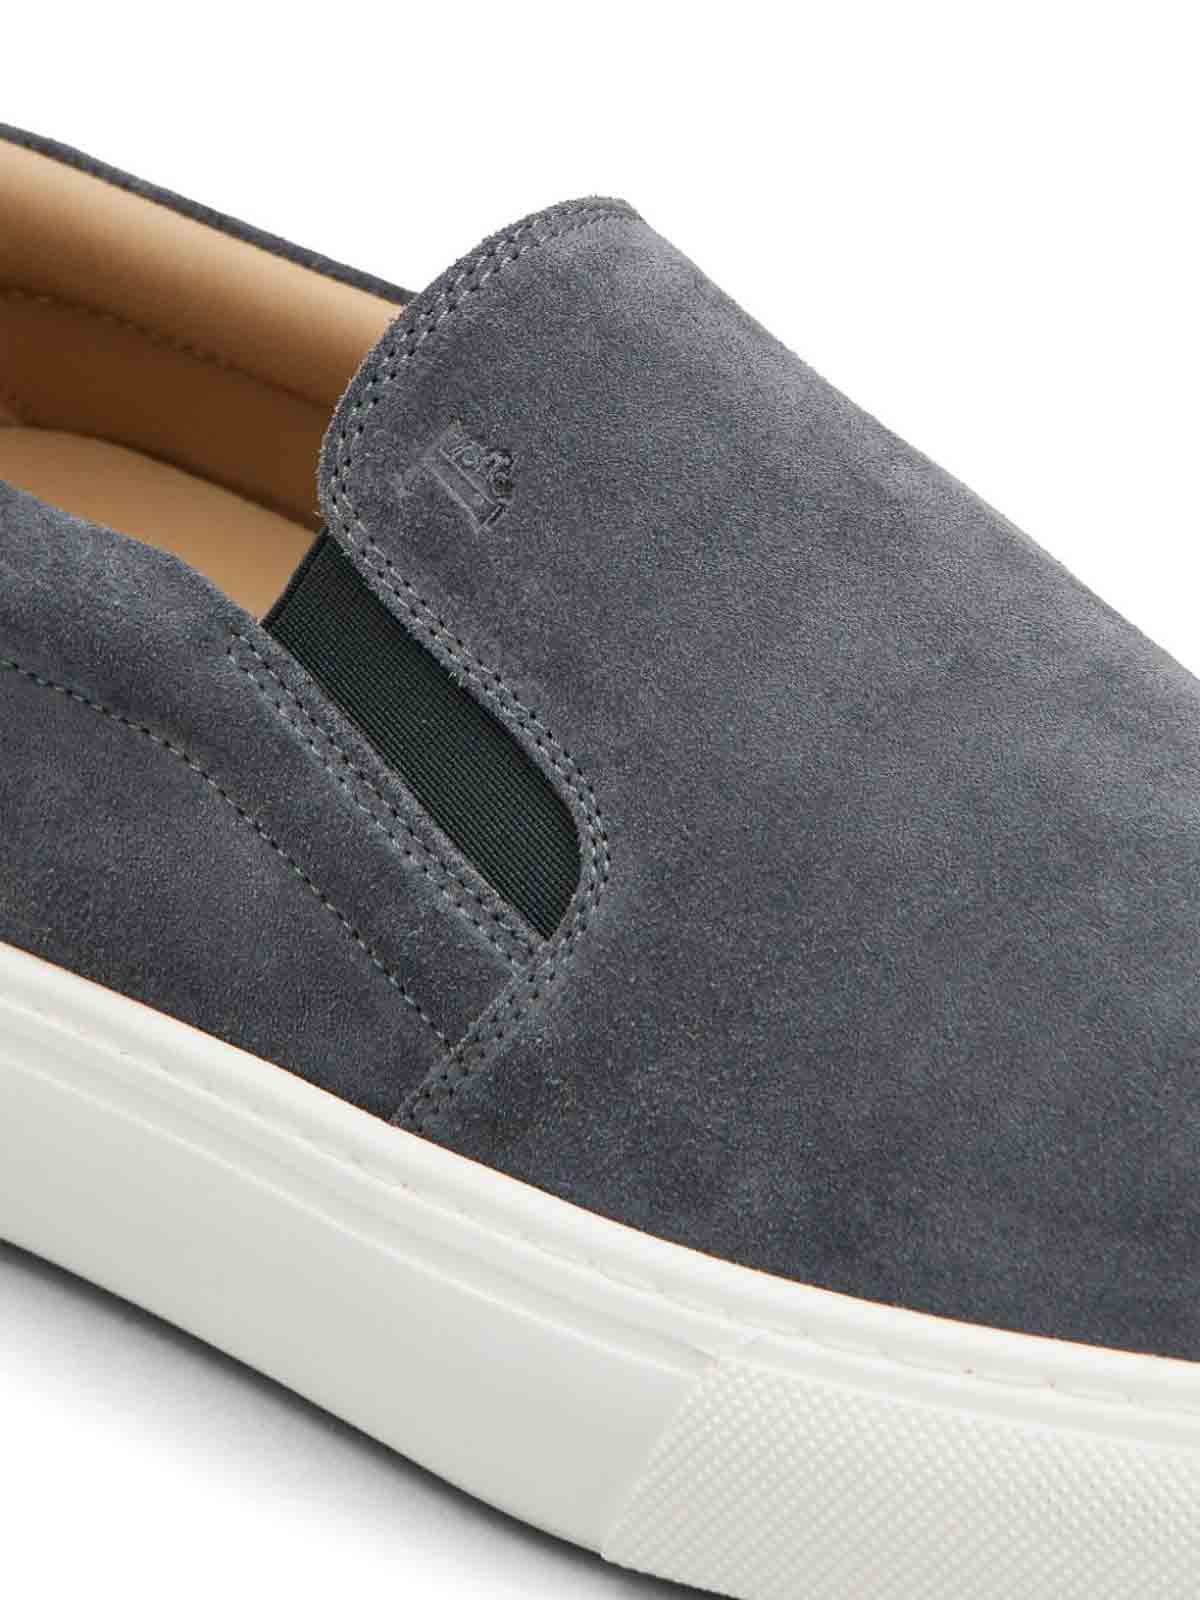 Shop Tod's Zapatos Clásicos - Gris In Grey